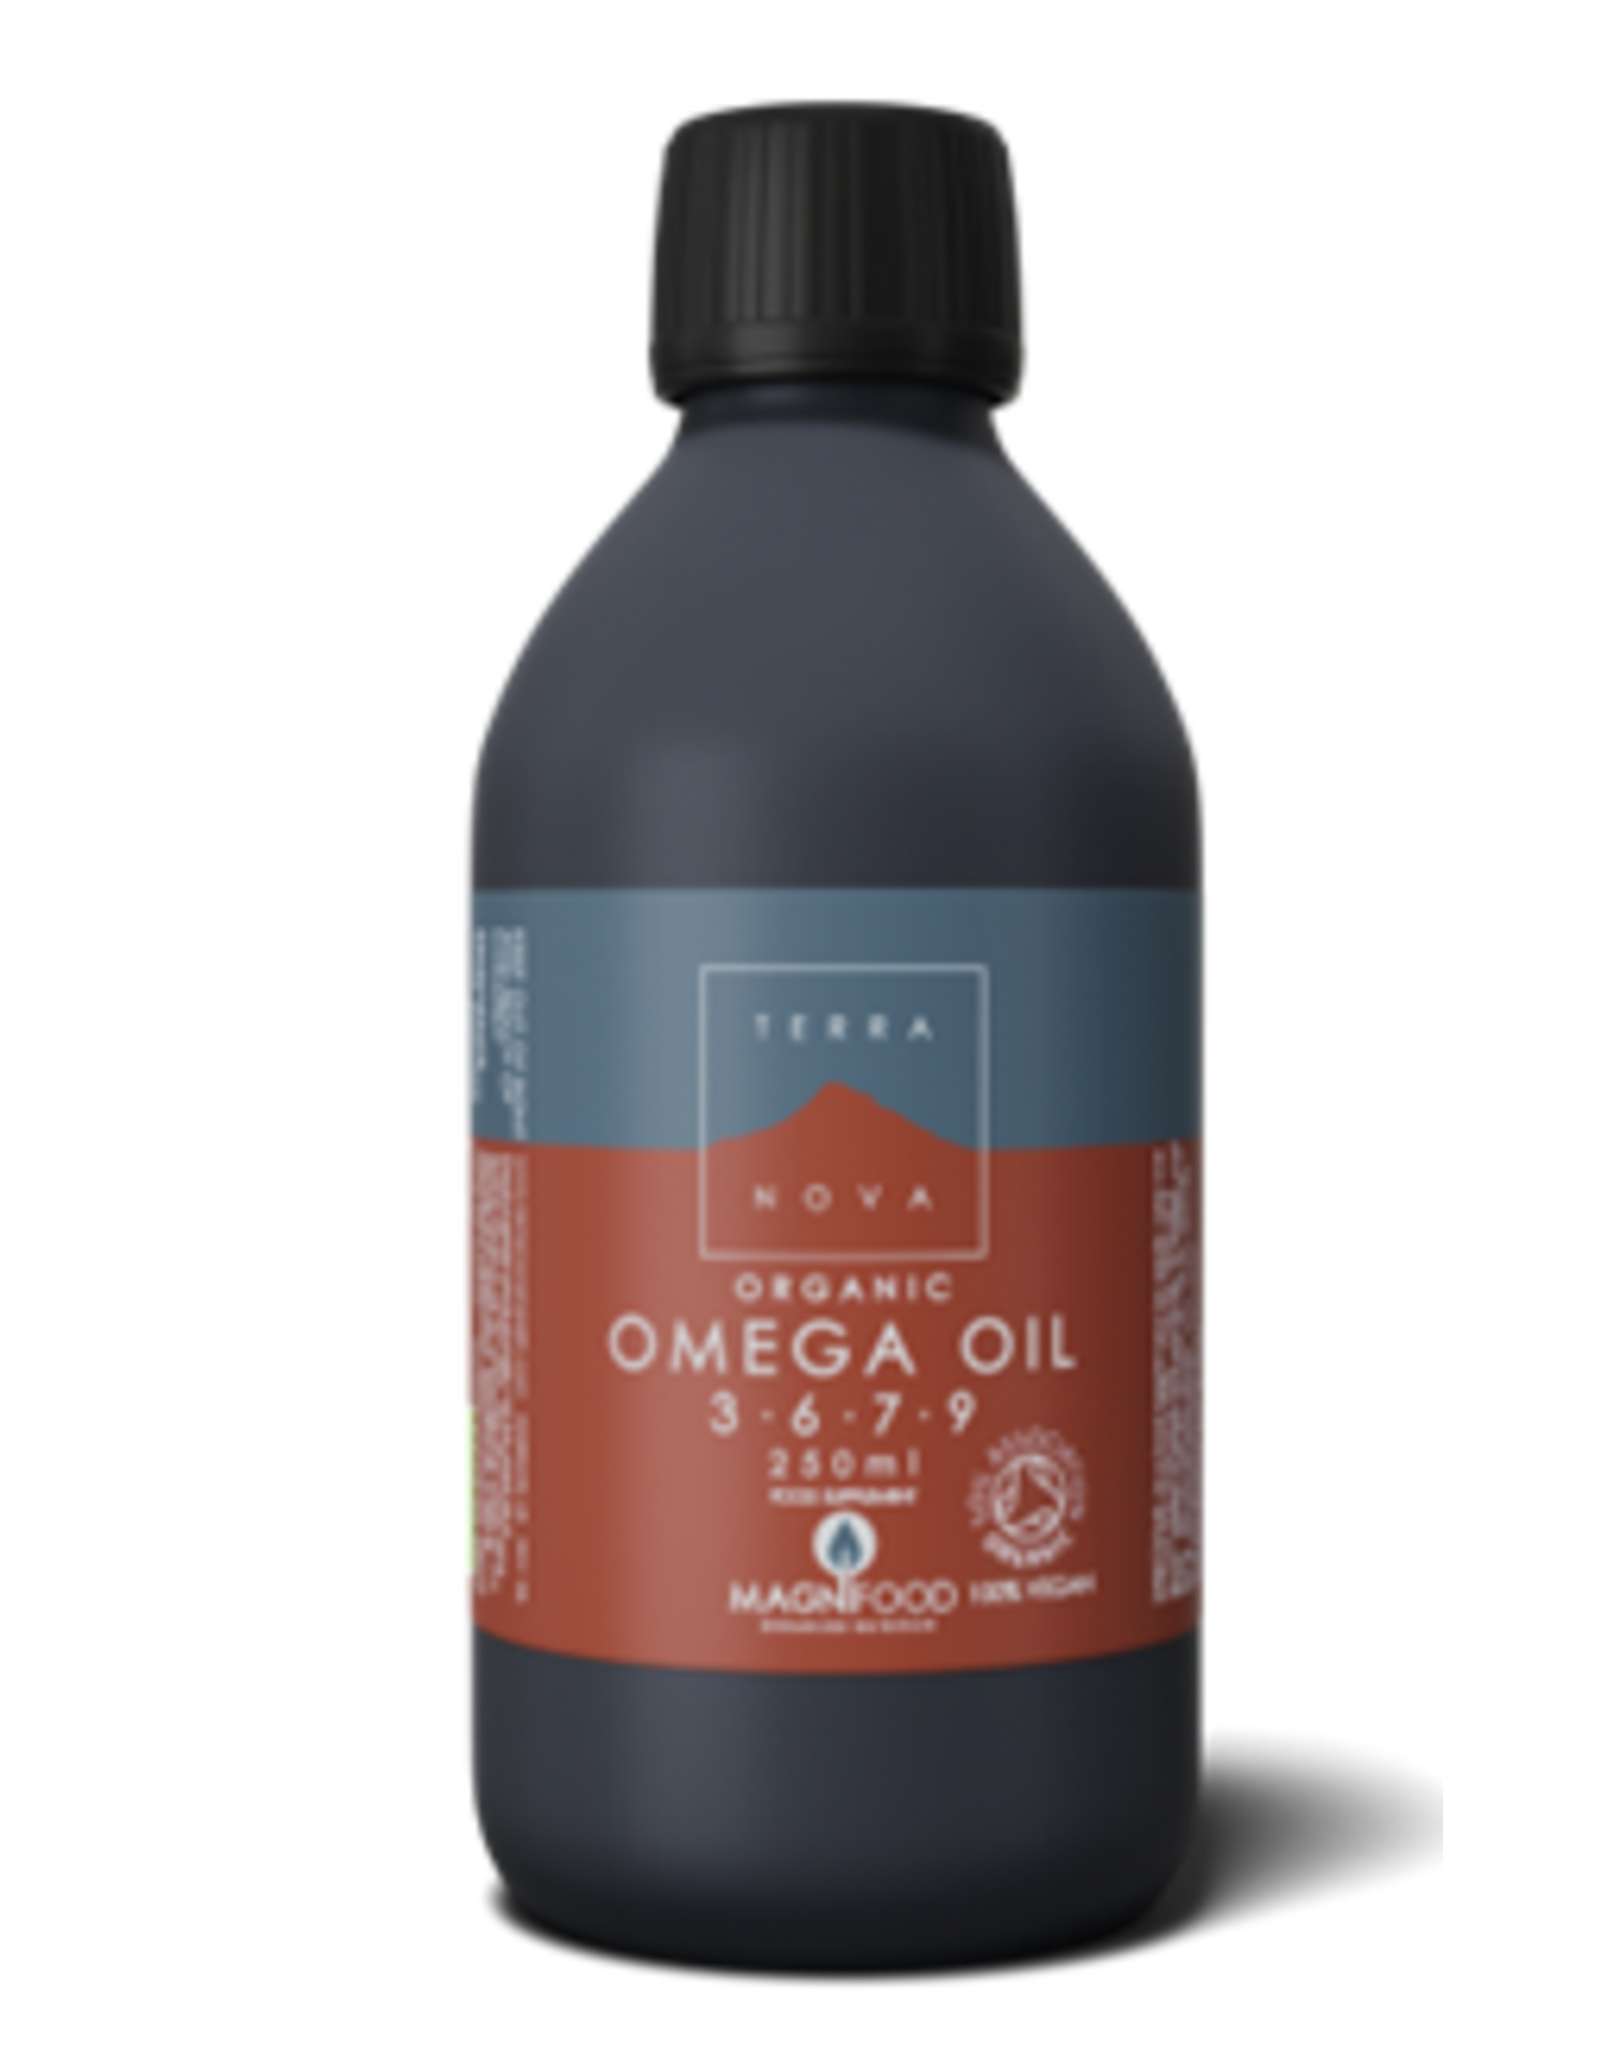 Terranova Omega 3-6-7-9 oil blend 250 ml